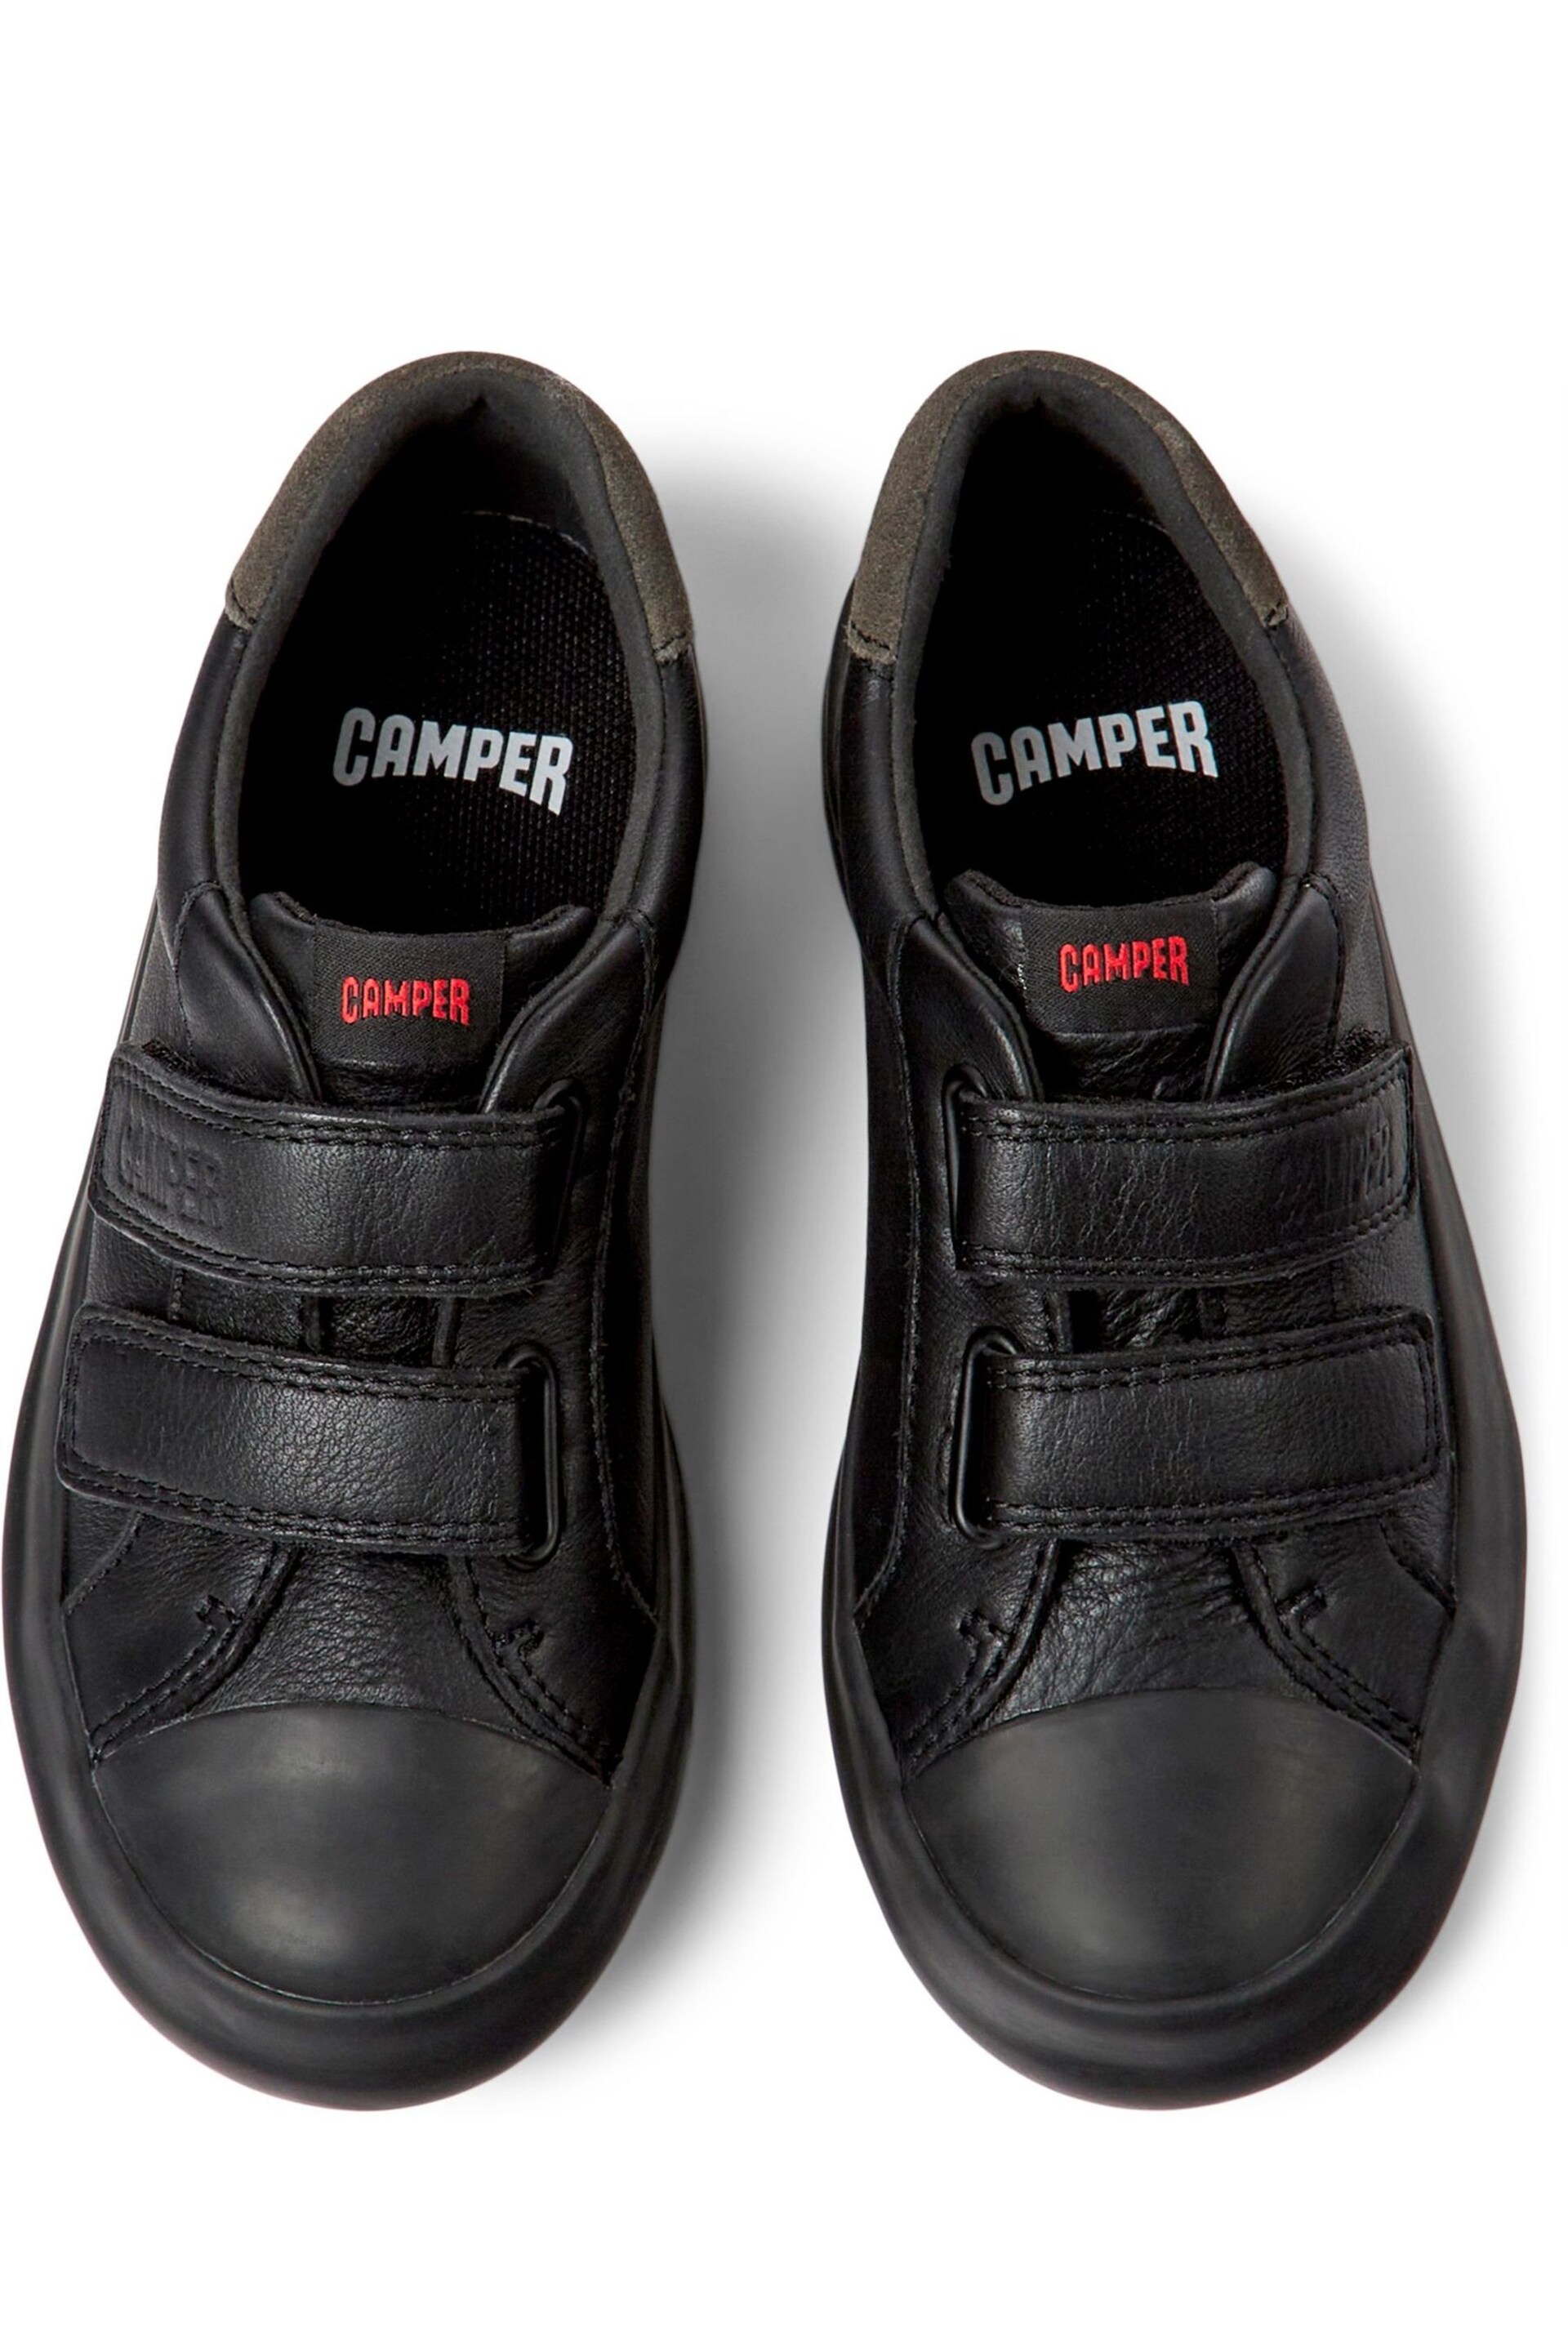 Camper Kids Black Sneakers - Image 4 of 5